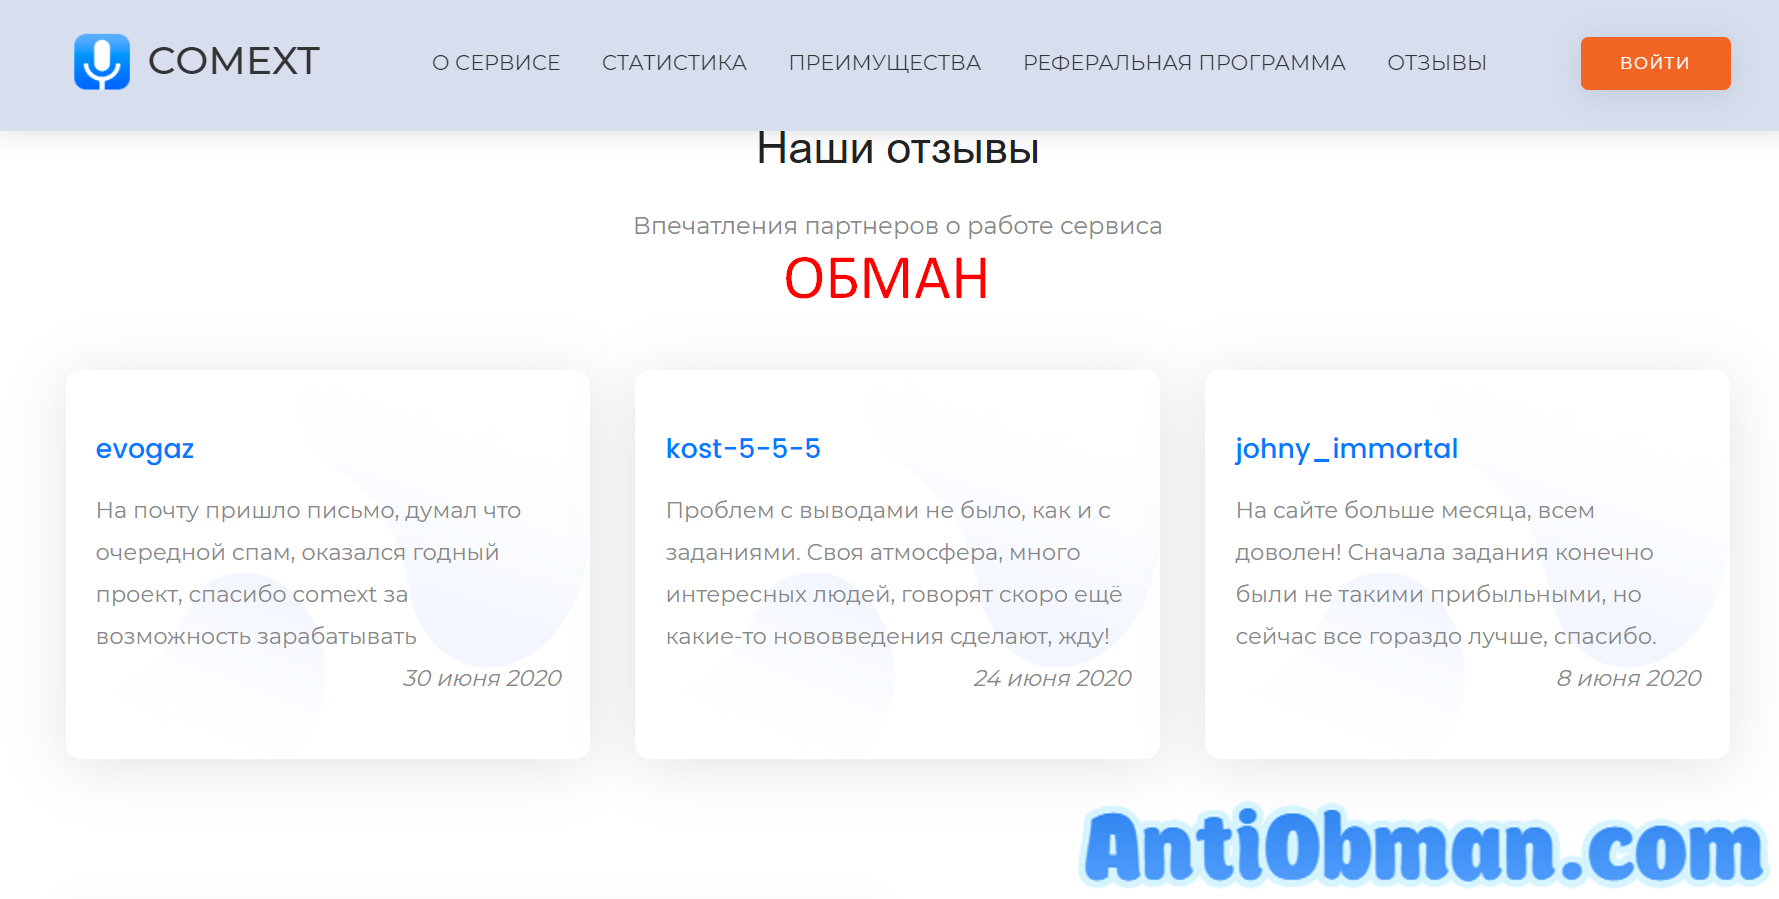 Заработок на транскрибации - отзывы и проверка COMEXT.ru